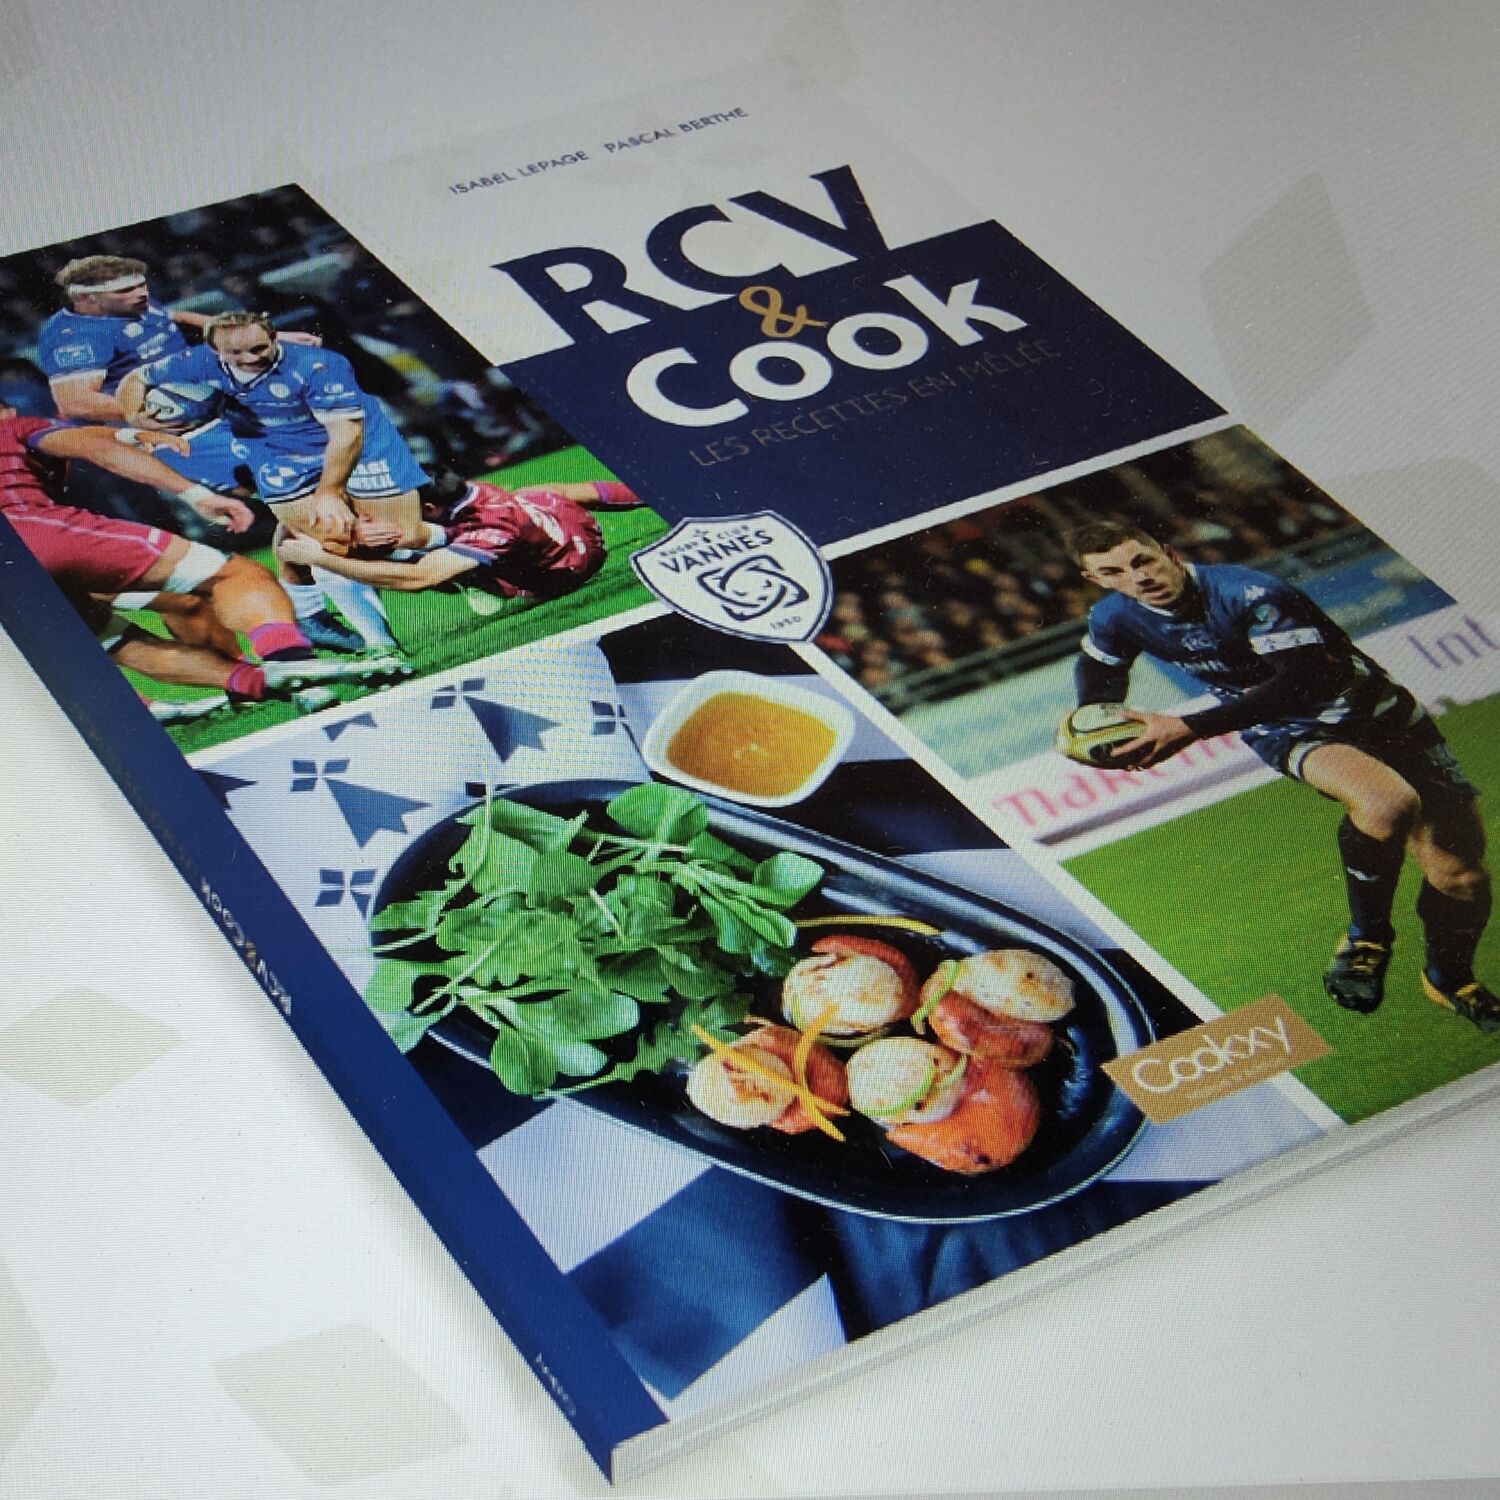 RCV & Cook, les recettes en mêlée - Le nouveau livre d'Isabel Lepage